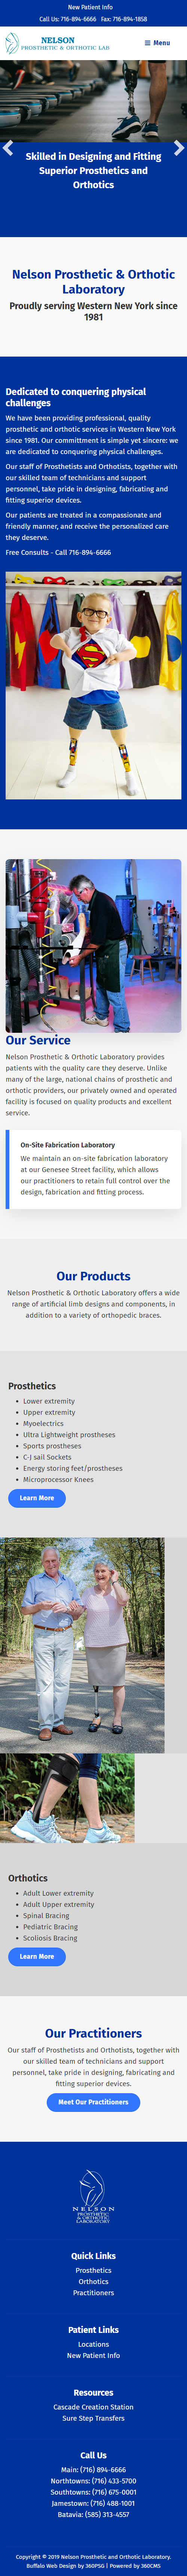 Nelson Prosthetic & Orthotic Laboratory Mobile